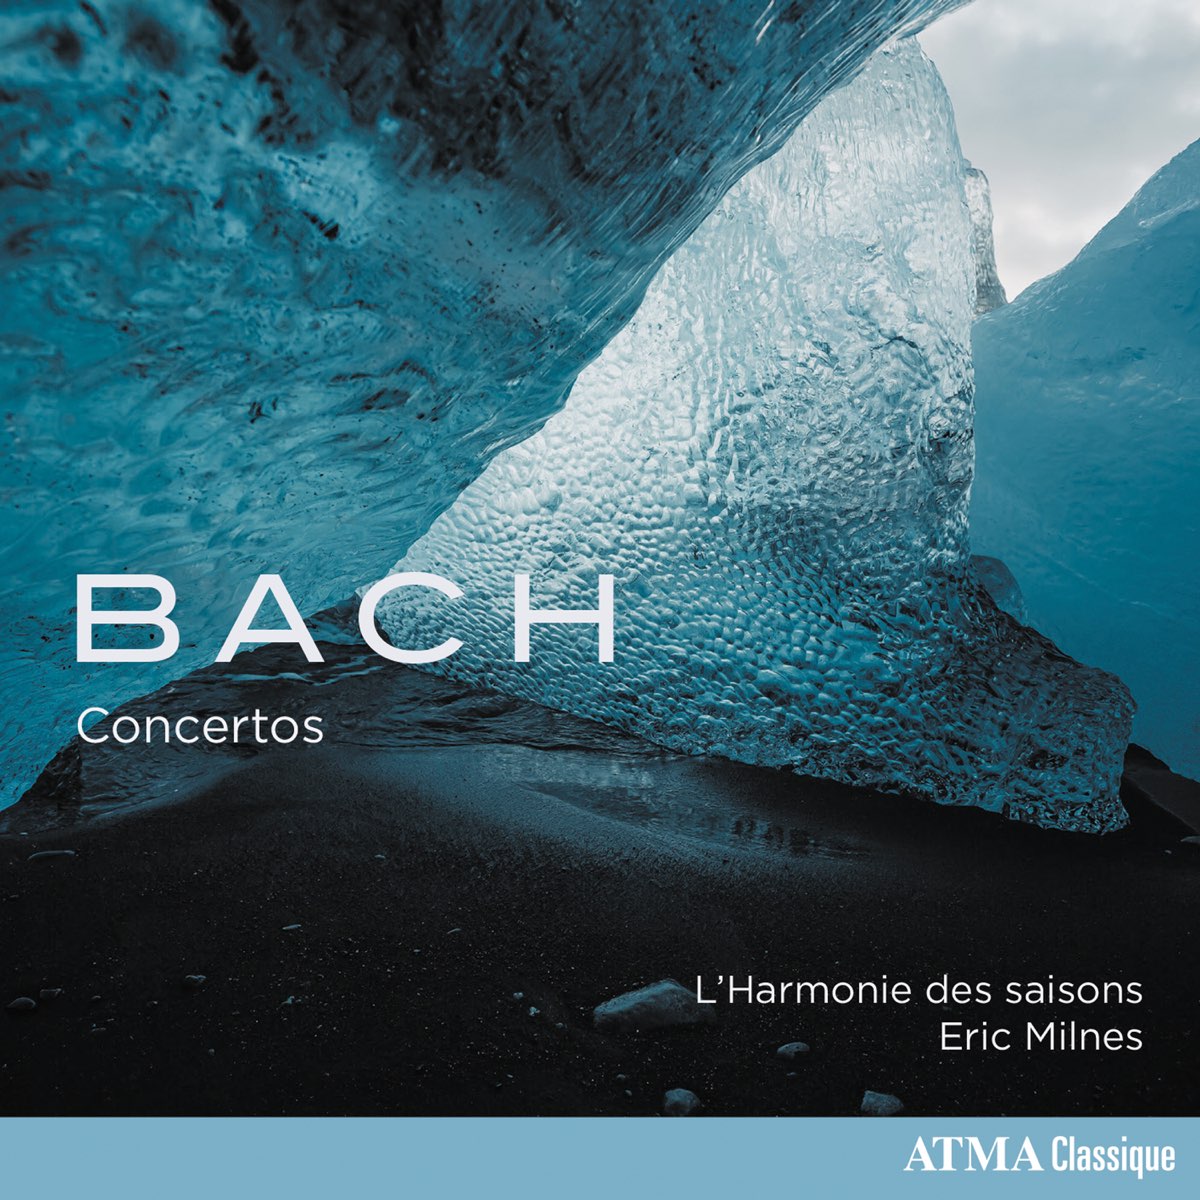 ‎Bach Concertos by L'Harmonie des Saisons & Eric Milnes on Apple Music